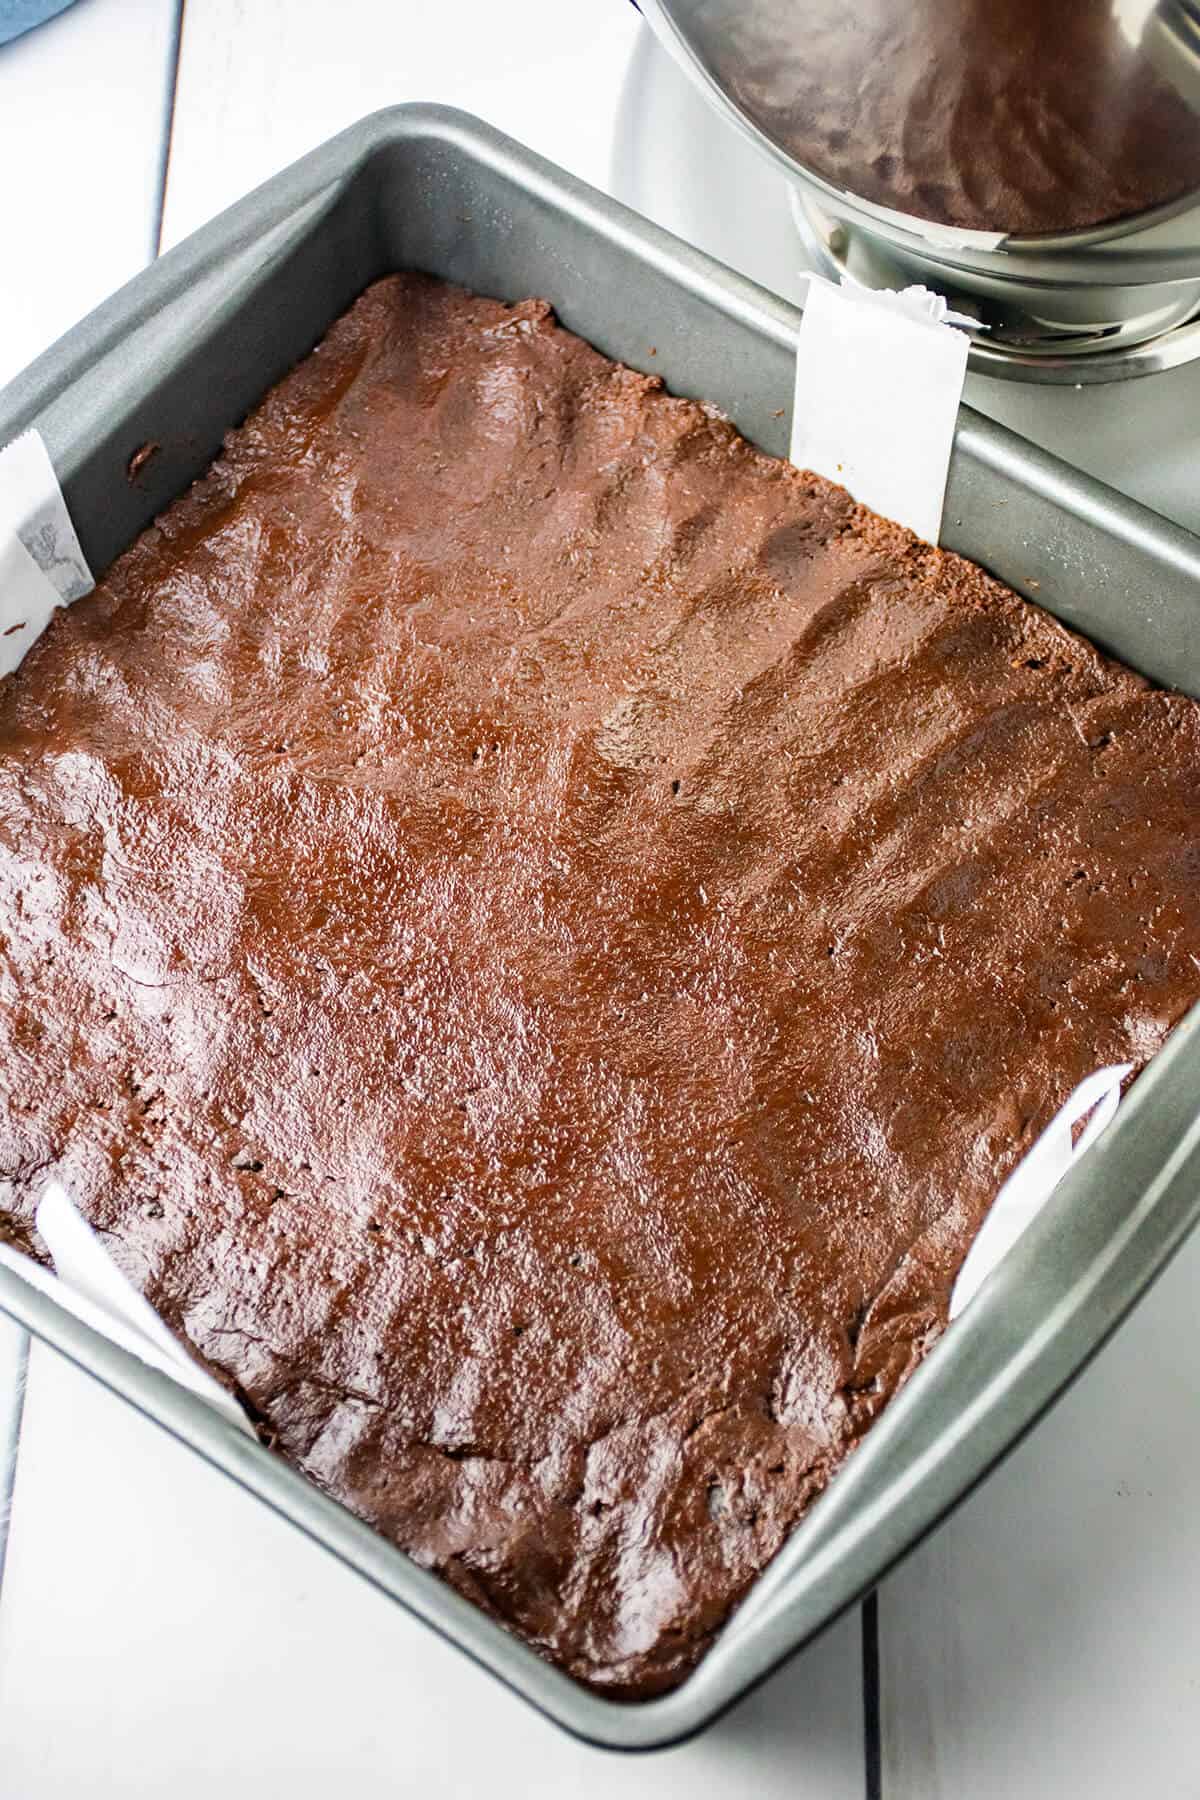 Brownie mixture pressed into prepared pan.